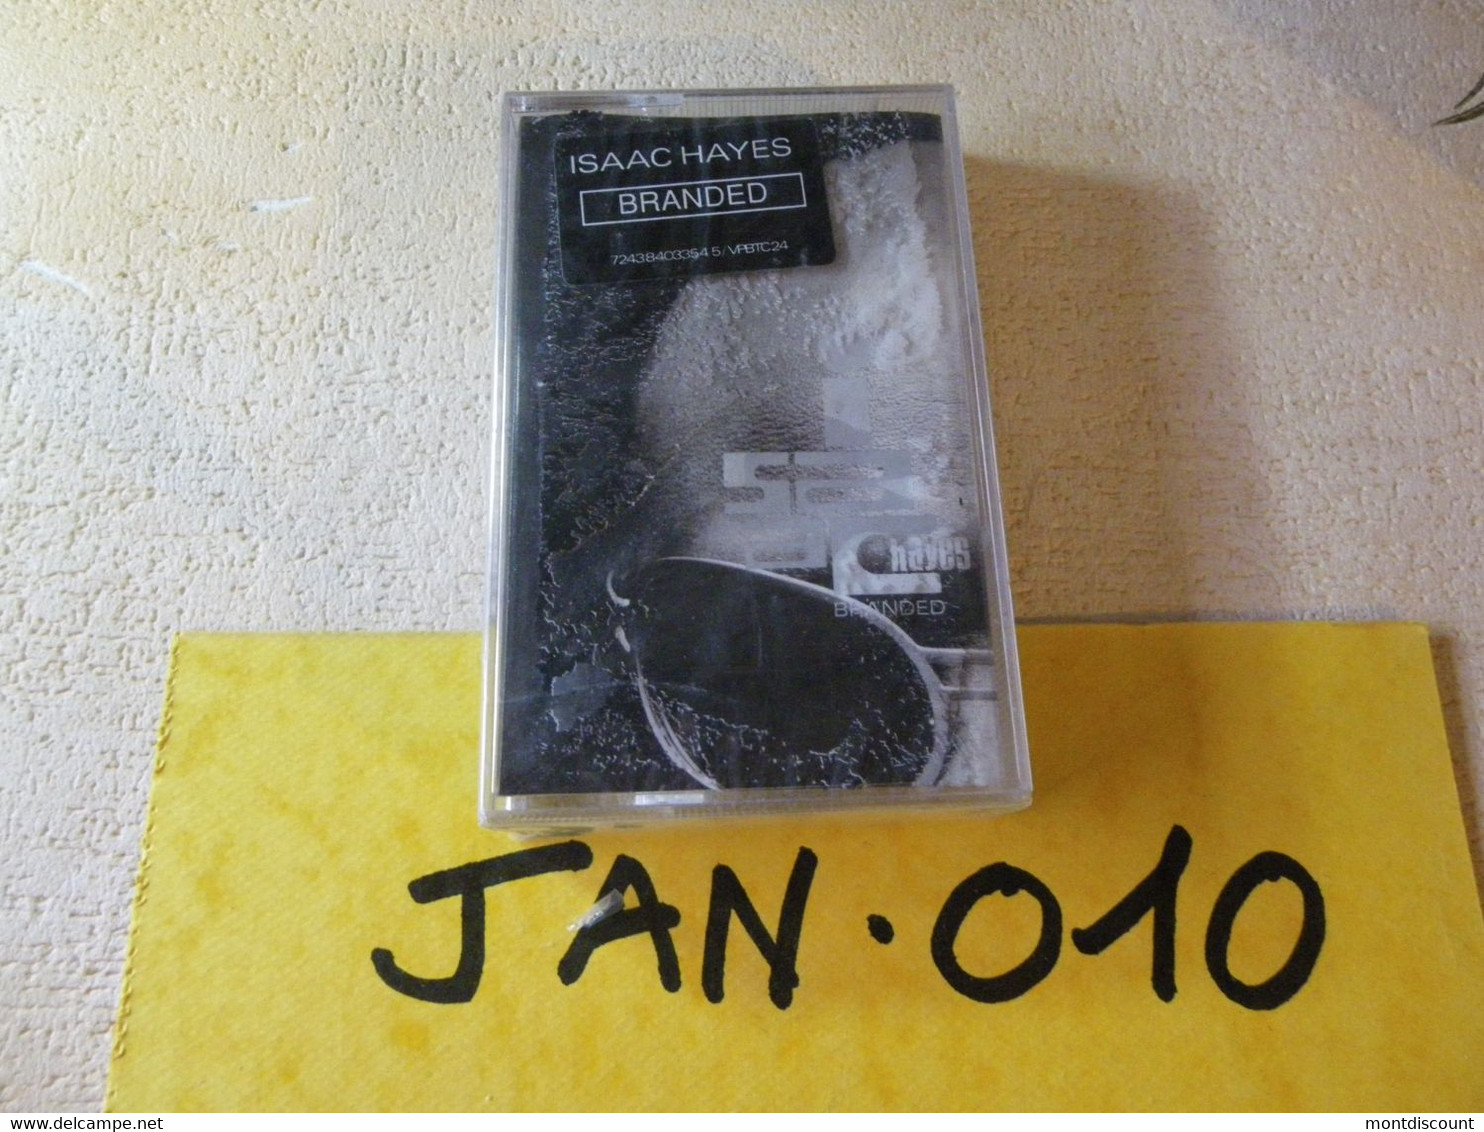 ISAAC HAYES K7 AUDIO EMBALLE D'ORIGINE JAMAIS SERVIE... VOIR PHOTO... (JAN 010) - Cassettes Audio